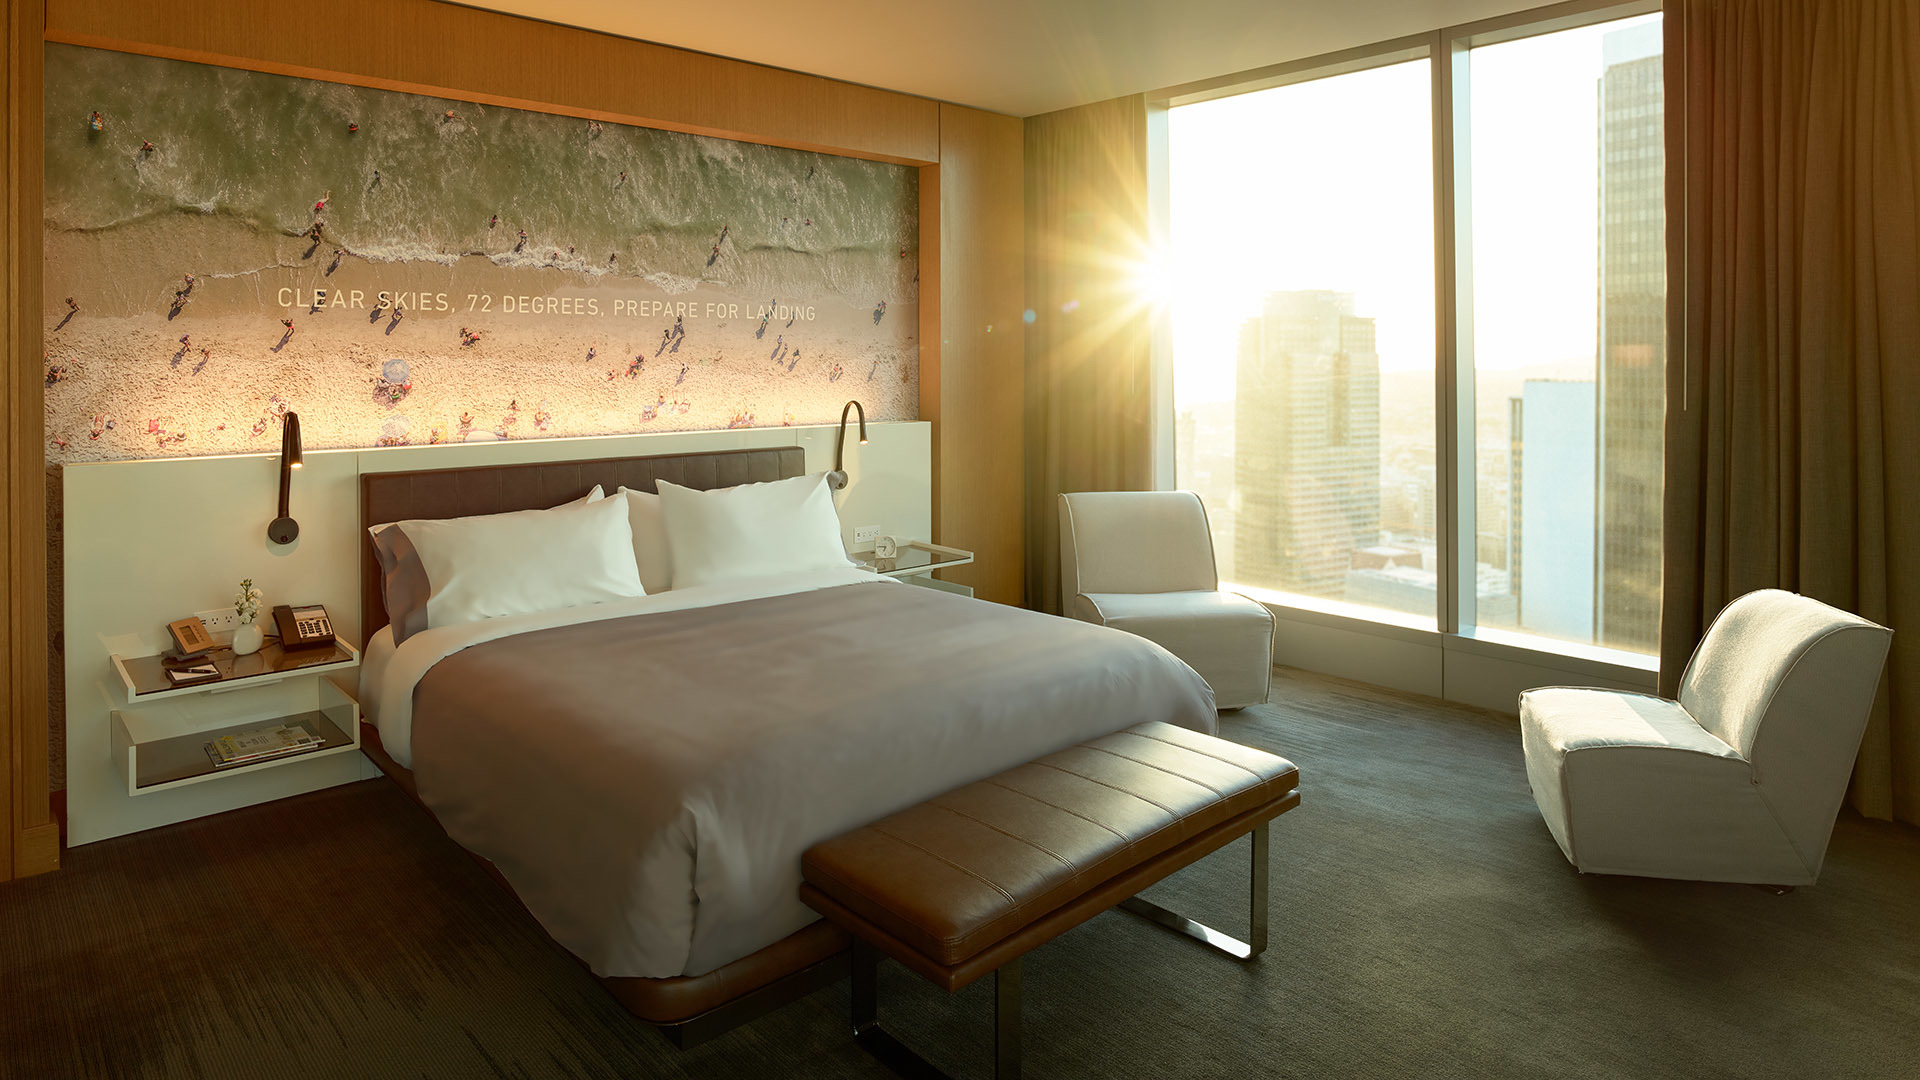 Bright sun illuminating cozy bedroom